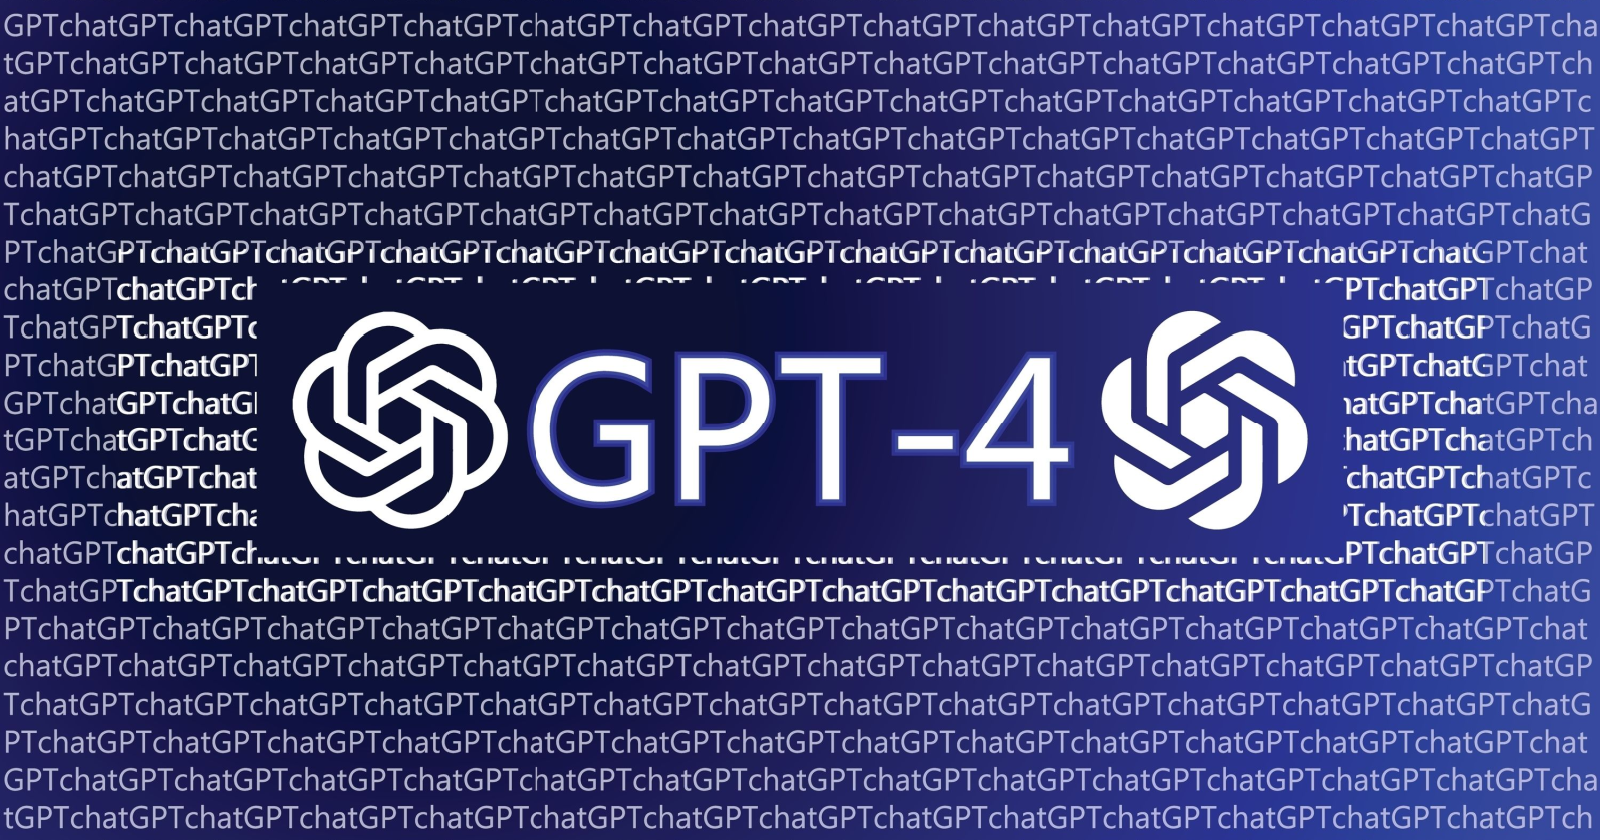 الأقرب للإدراك البشري .. ما هو GPT-4 ؟ وما سر أهميته وكيف سيتم استخدامه